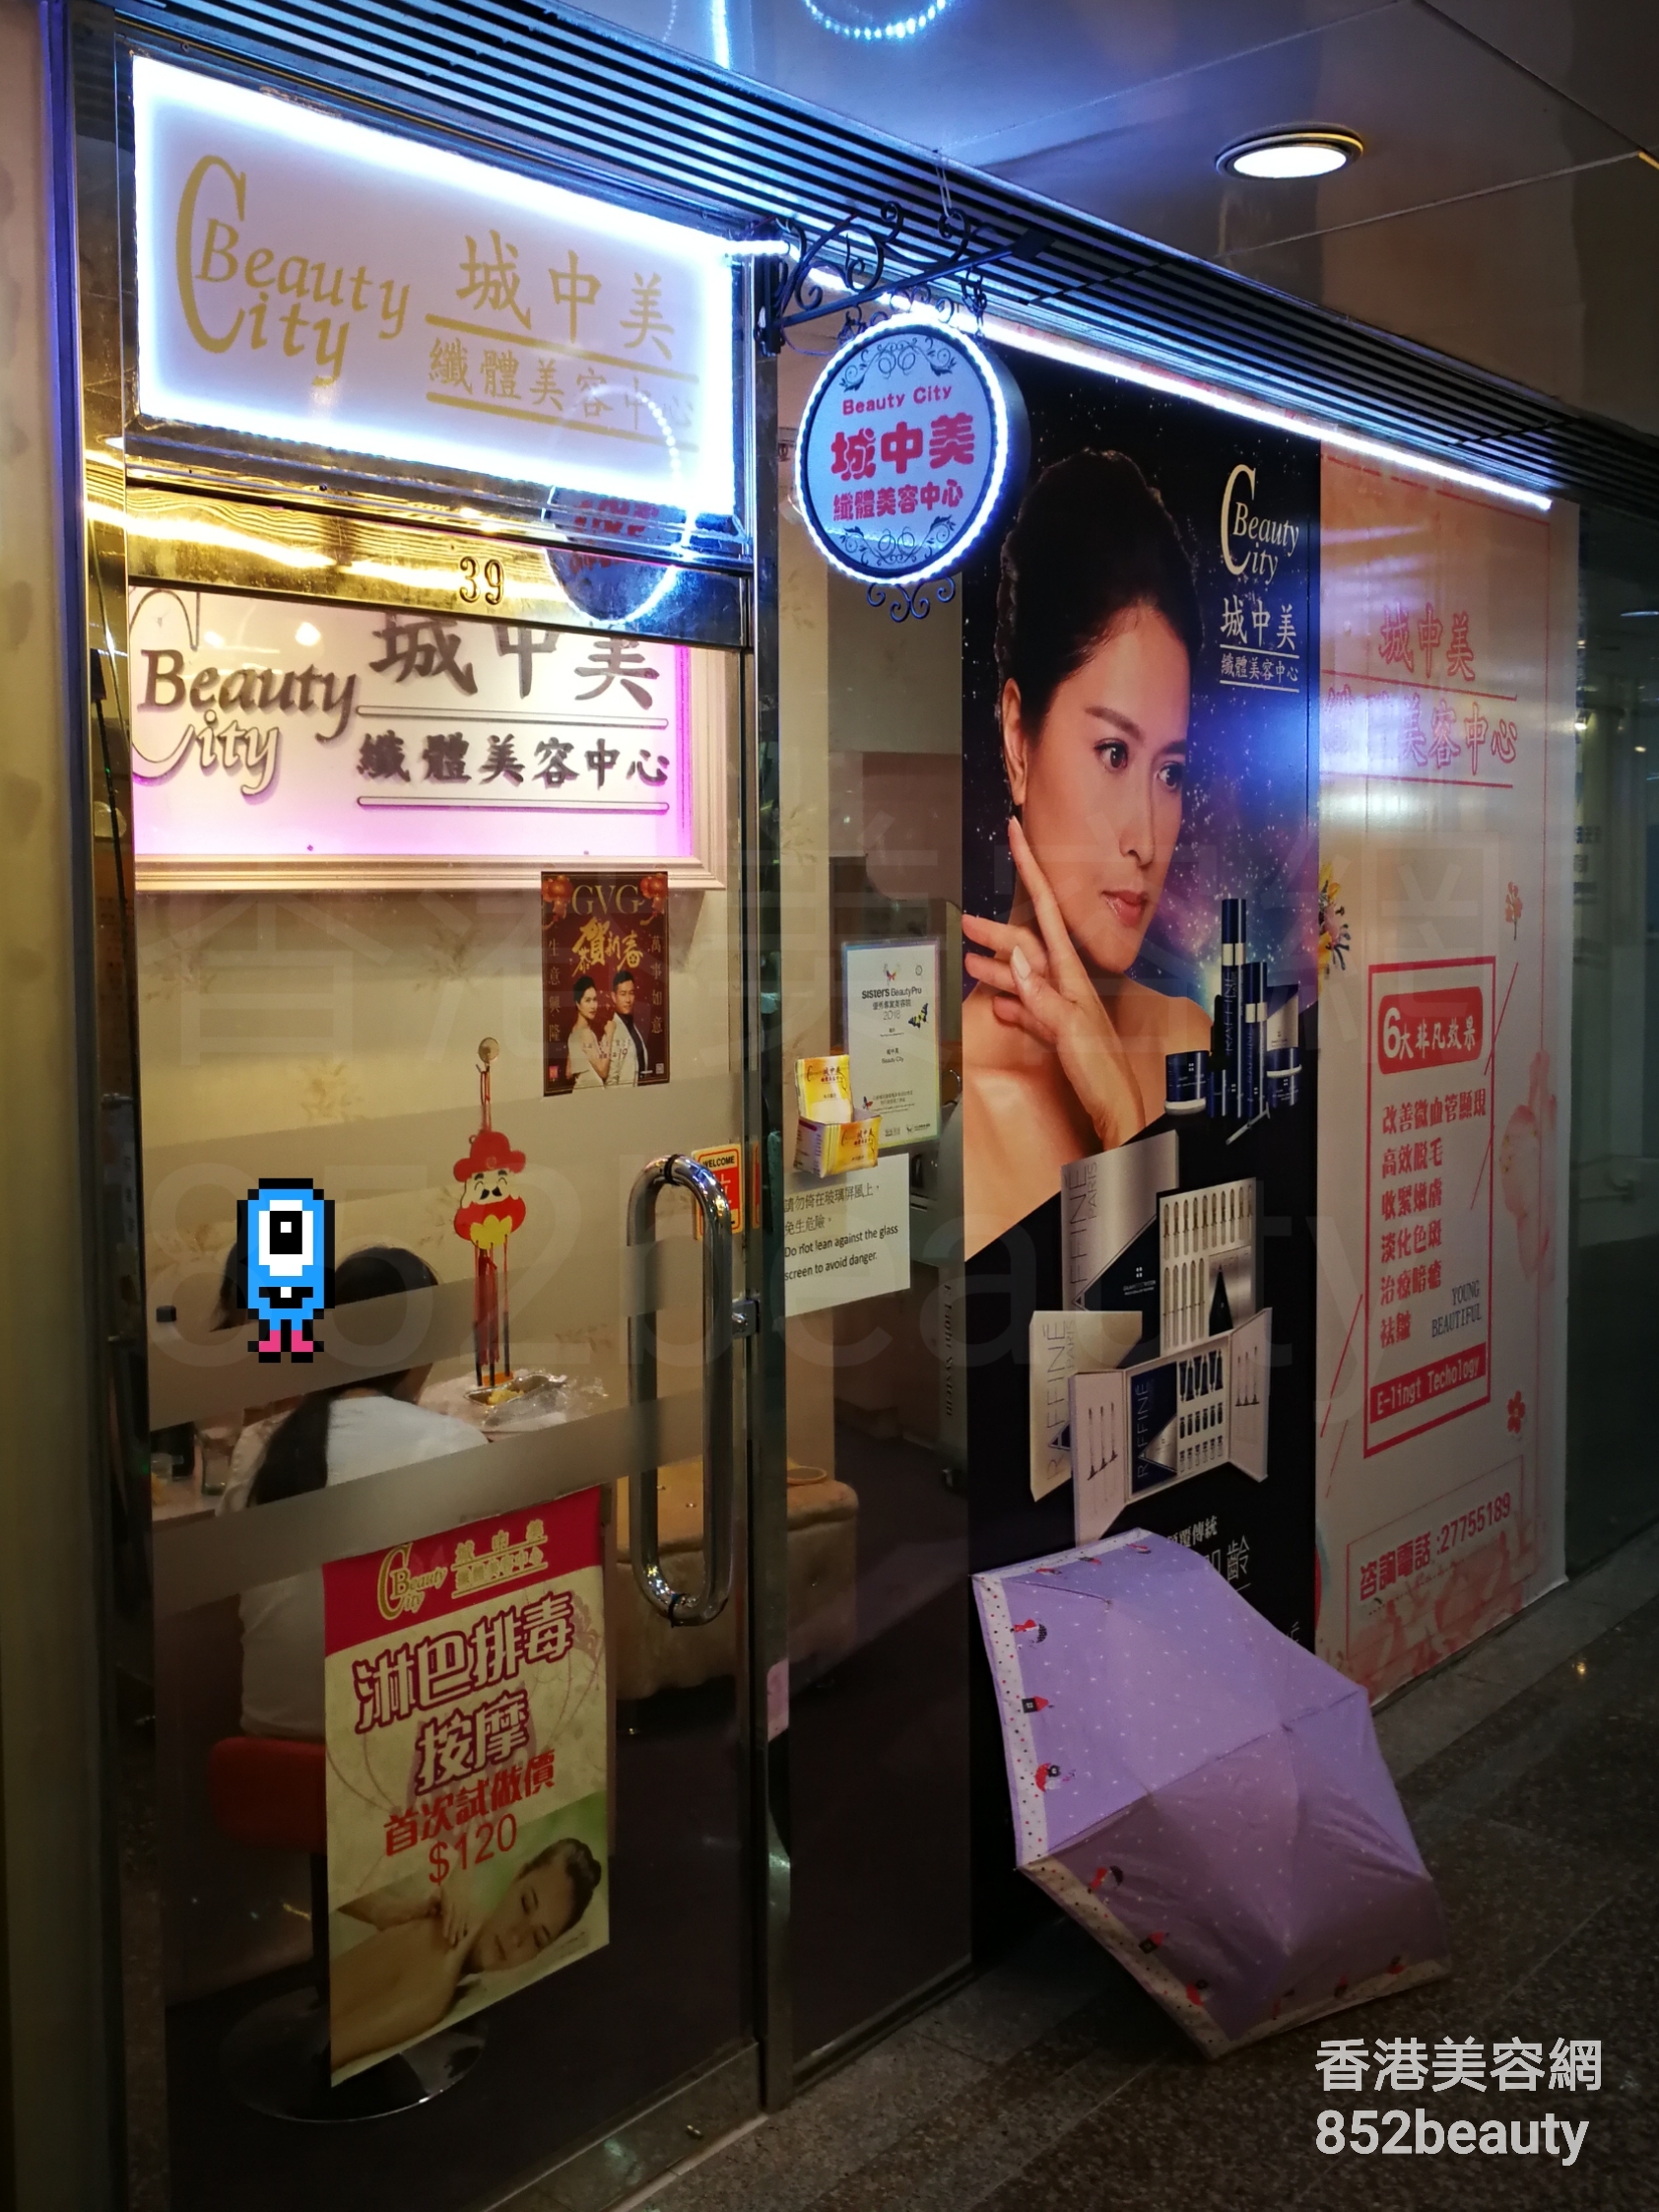 香港美容網 Hong Kong Beauty Salon 美容院 / 美容師: 城中美 纖體美容中心